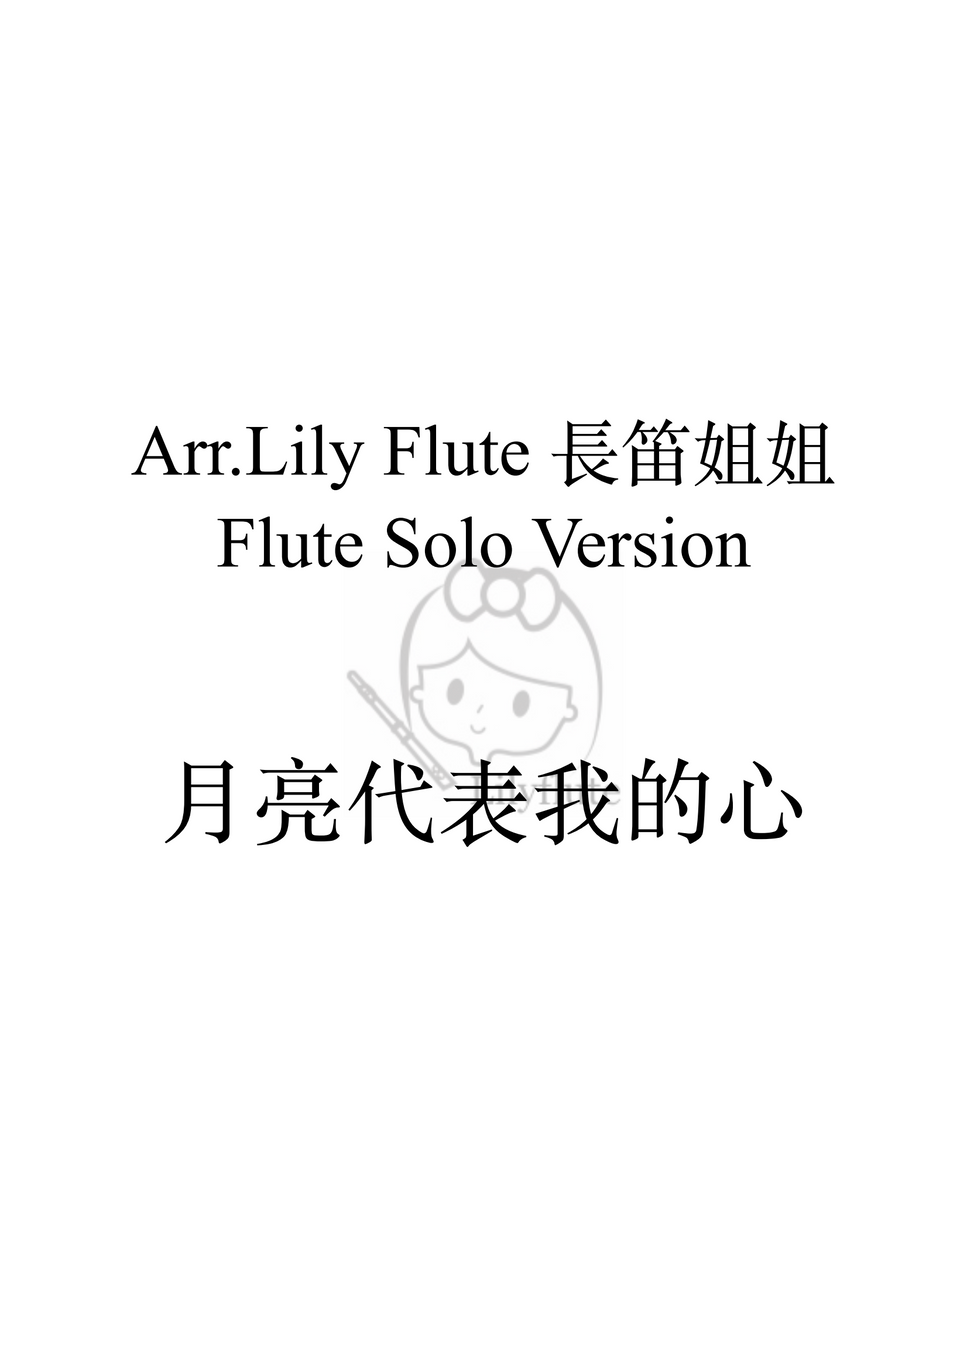 鄧麗君 - 月亮代表我的心 (Solo Version) by Lily Flute 長笛姐姐